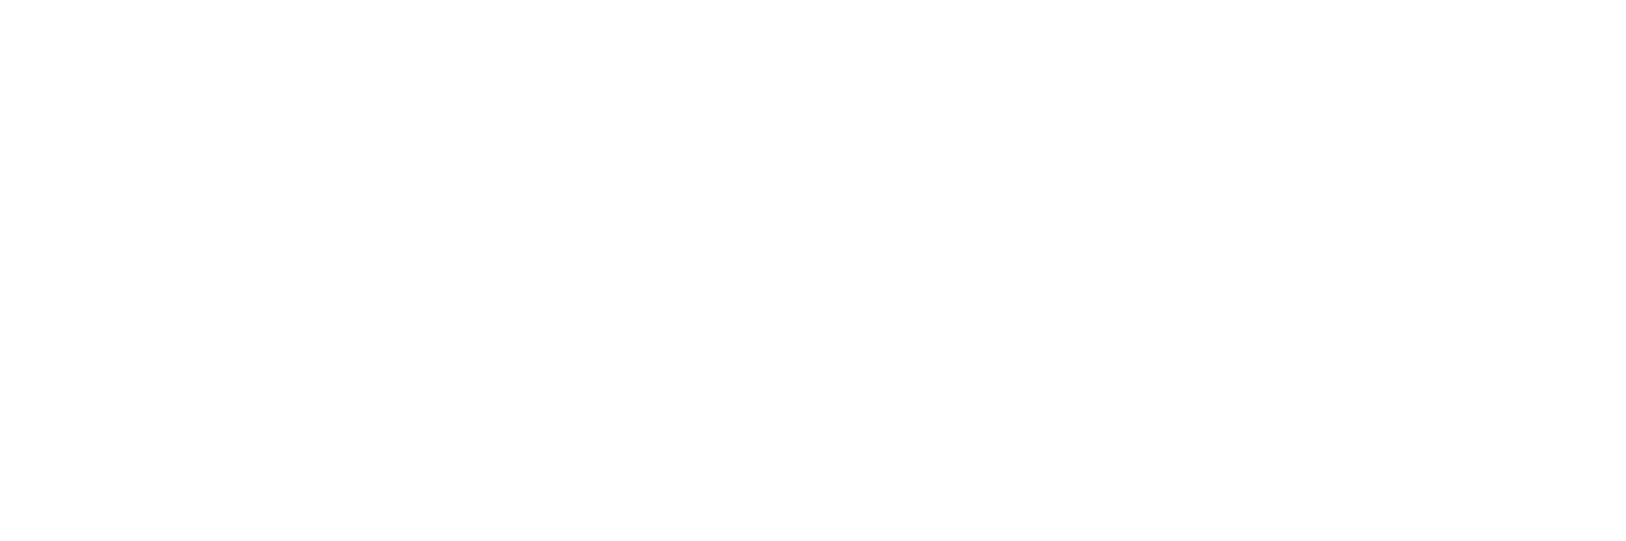 Spendexplorer logo